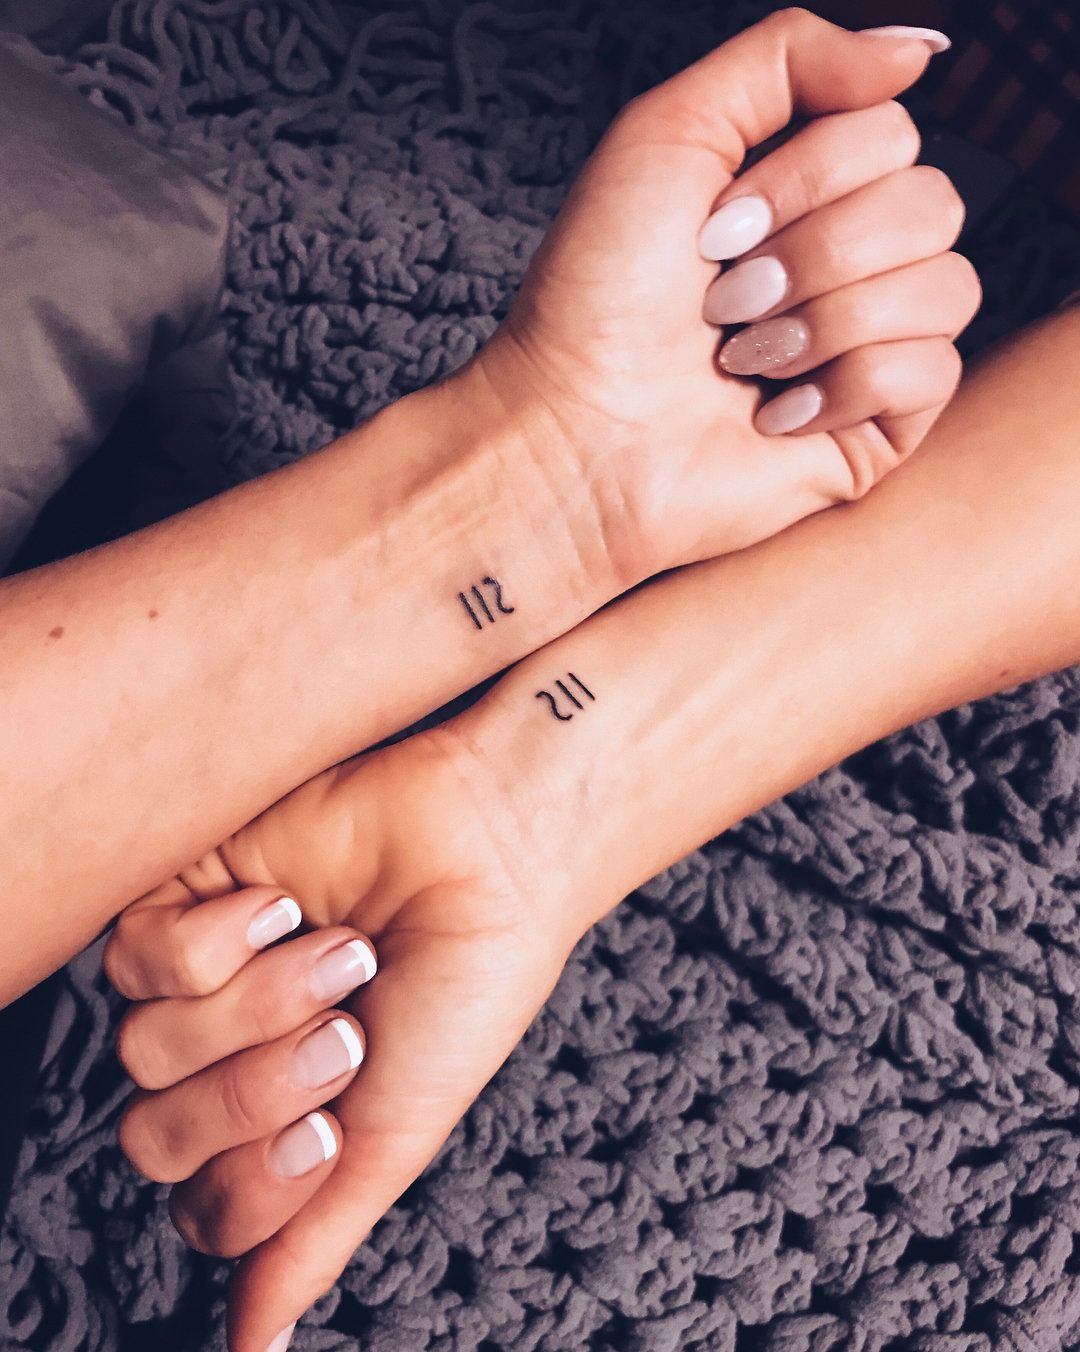 Girl Best Friend Matching Tattoos (6)